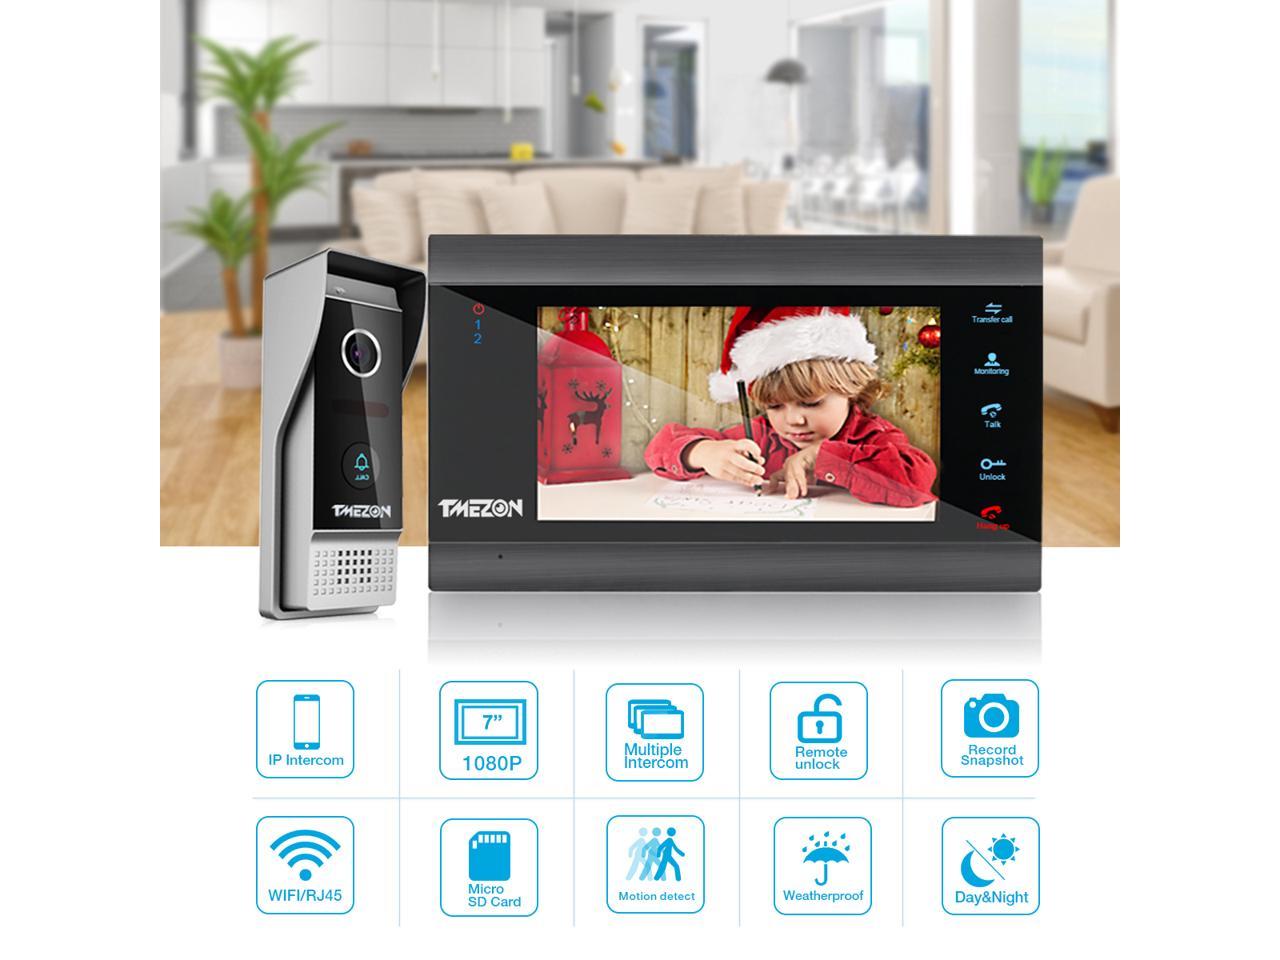 Details about   TMEZON 1080P Wireless WiFi Video Door Phone Intercom with 7" IP Monitor Doorbell 